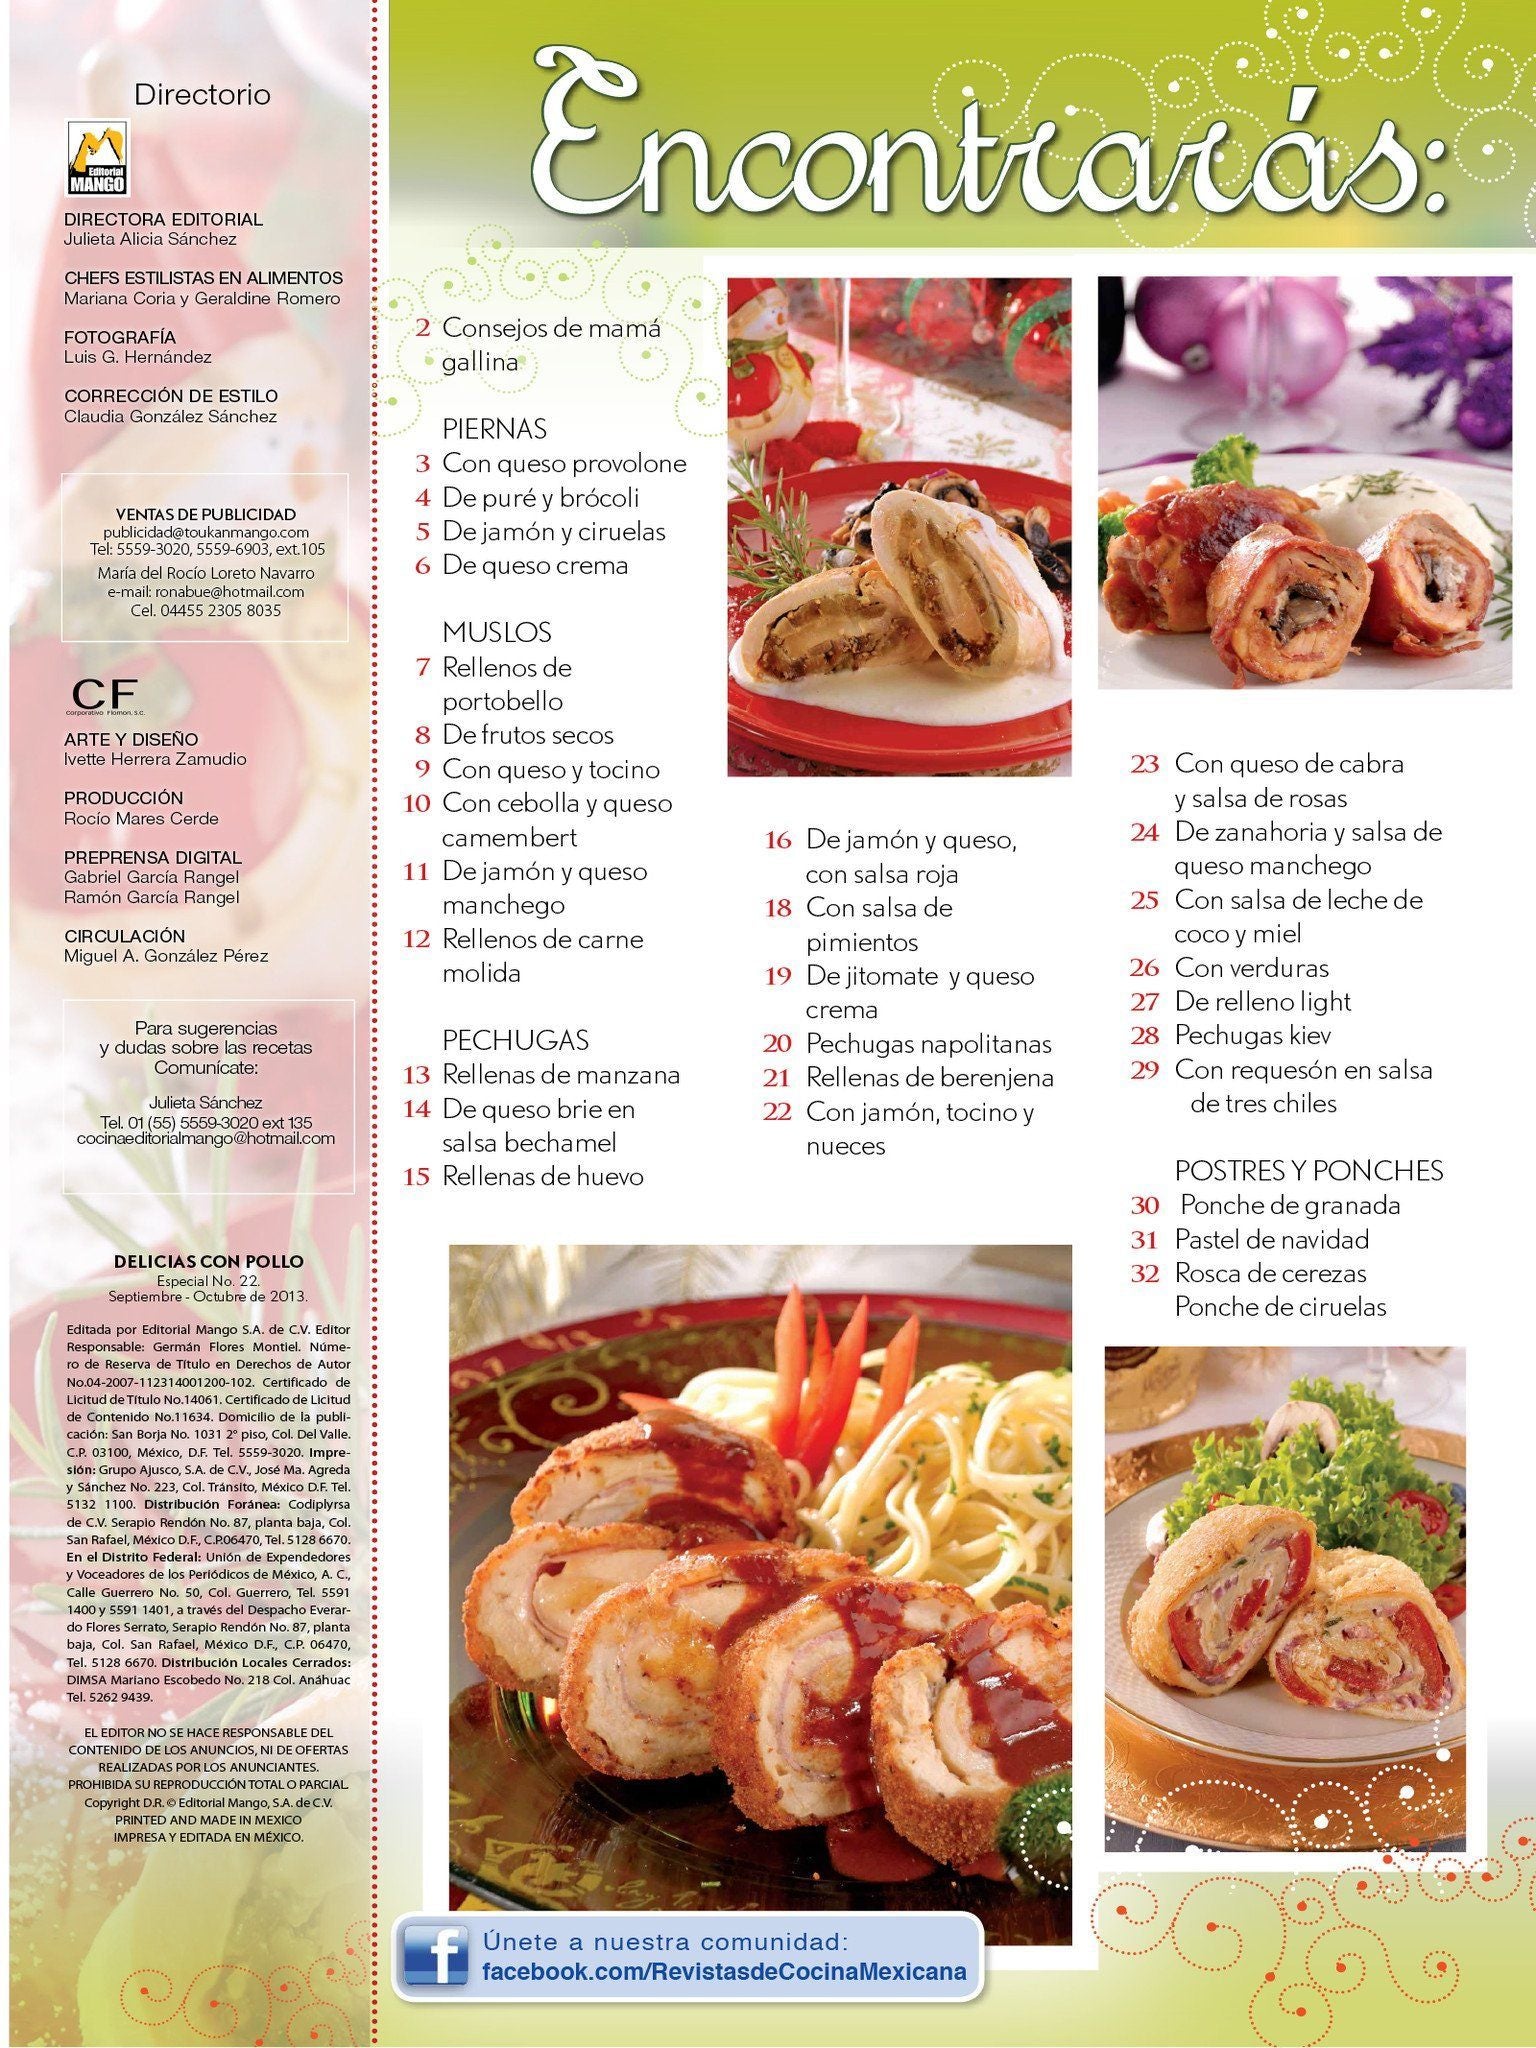 Delicias con Pollo Especial 22 - Piernas, muslos y pechugas rellenas para Navidad - Formato Digital - ToukanMango